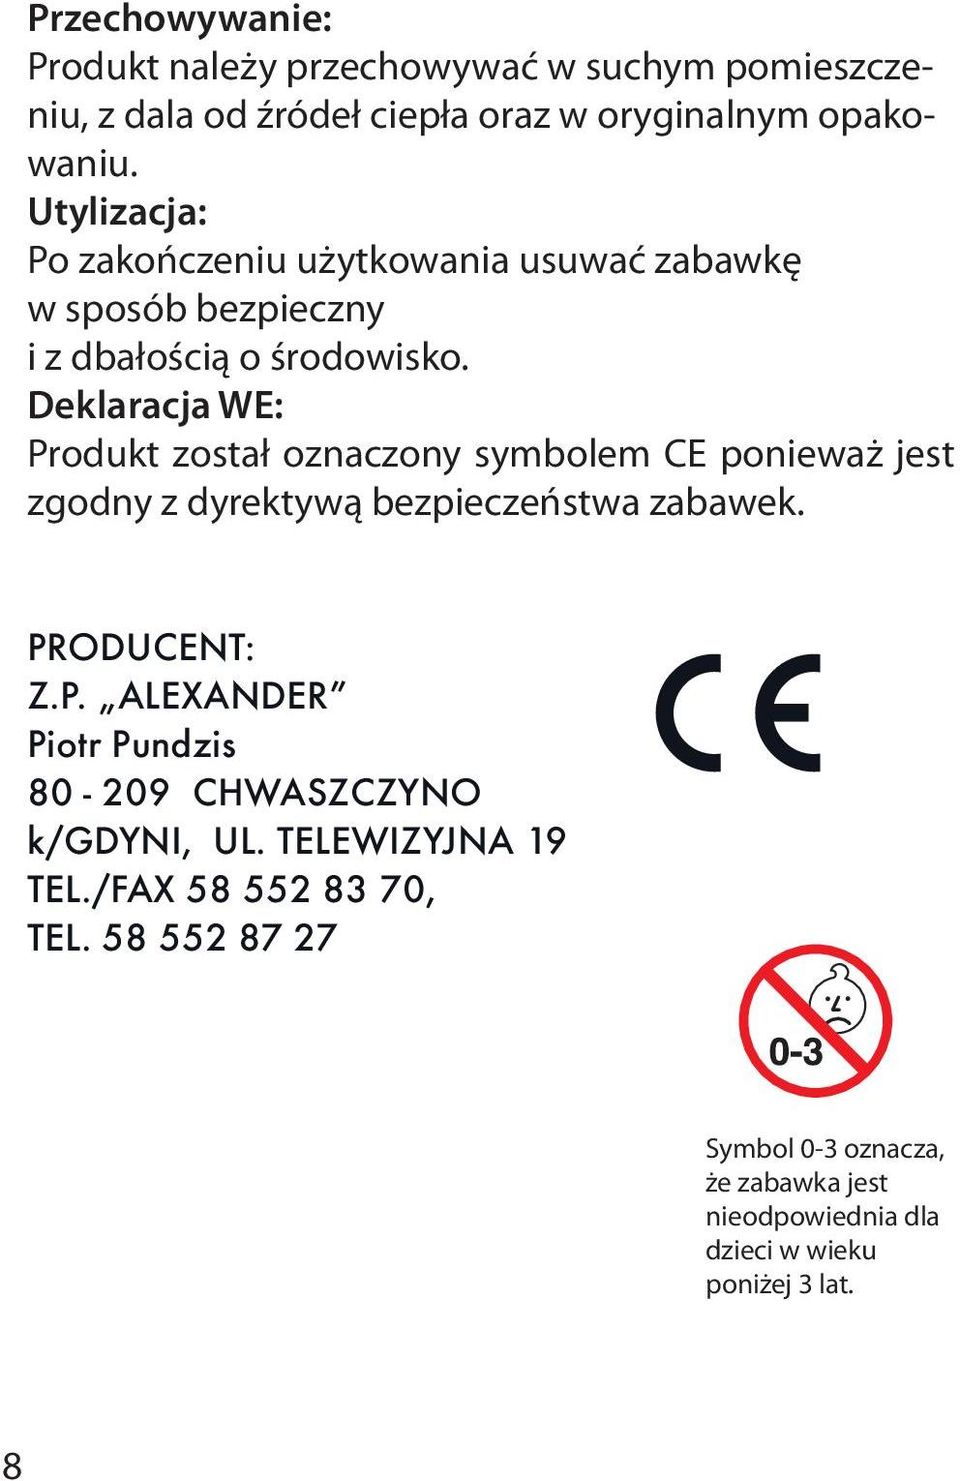 Deklaracja WE: Produkt został oznaczony symbolem CE ponieważ jest zgodny z dyrektywą bezpieczeństwa zabawek. PRODUCENT: Z.P. ALEXANDER Piotr Pundzis 80-209 CHWASZCZYNO k/gdyni, UL.